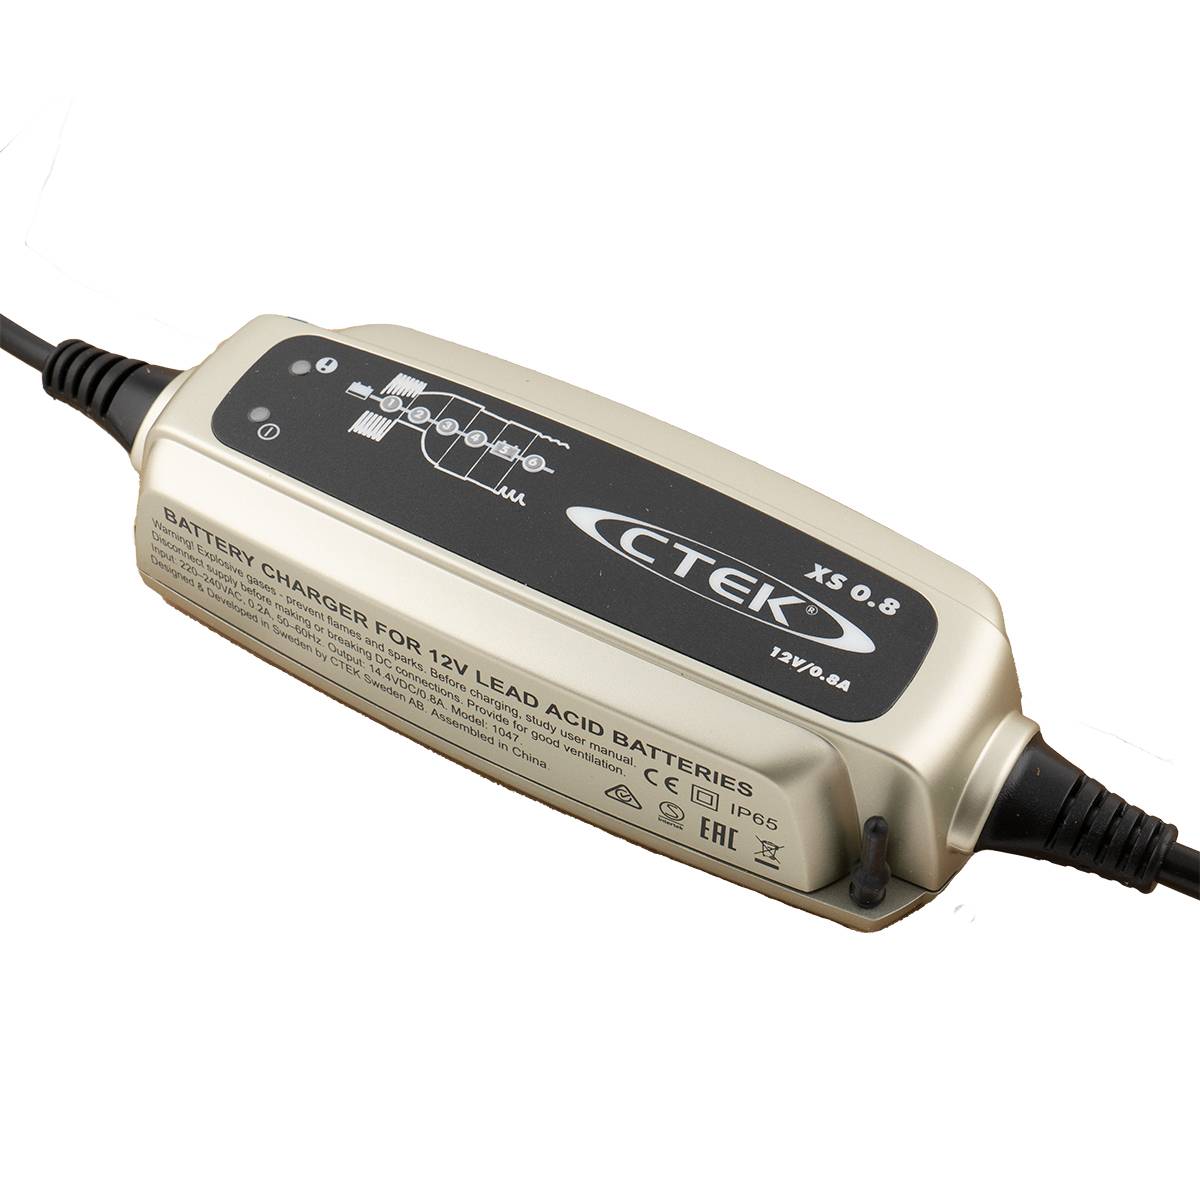 CTEK XS 0.8 Ladegerät für Motorradbatterien 12V 800mA